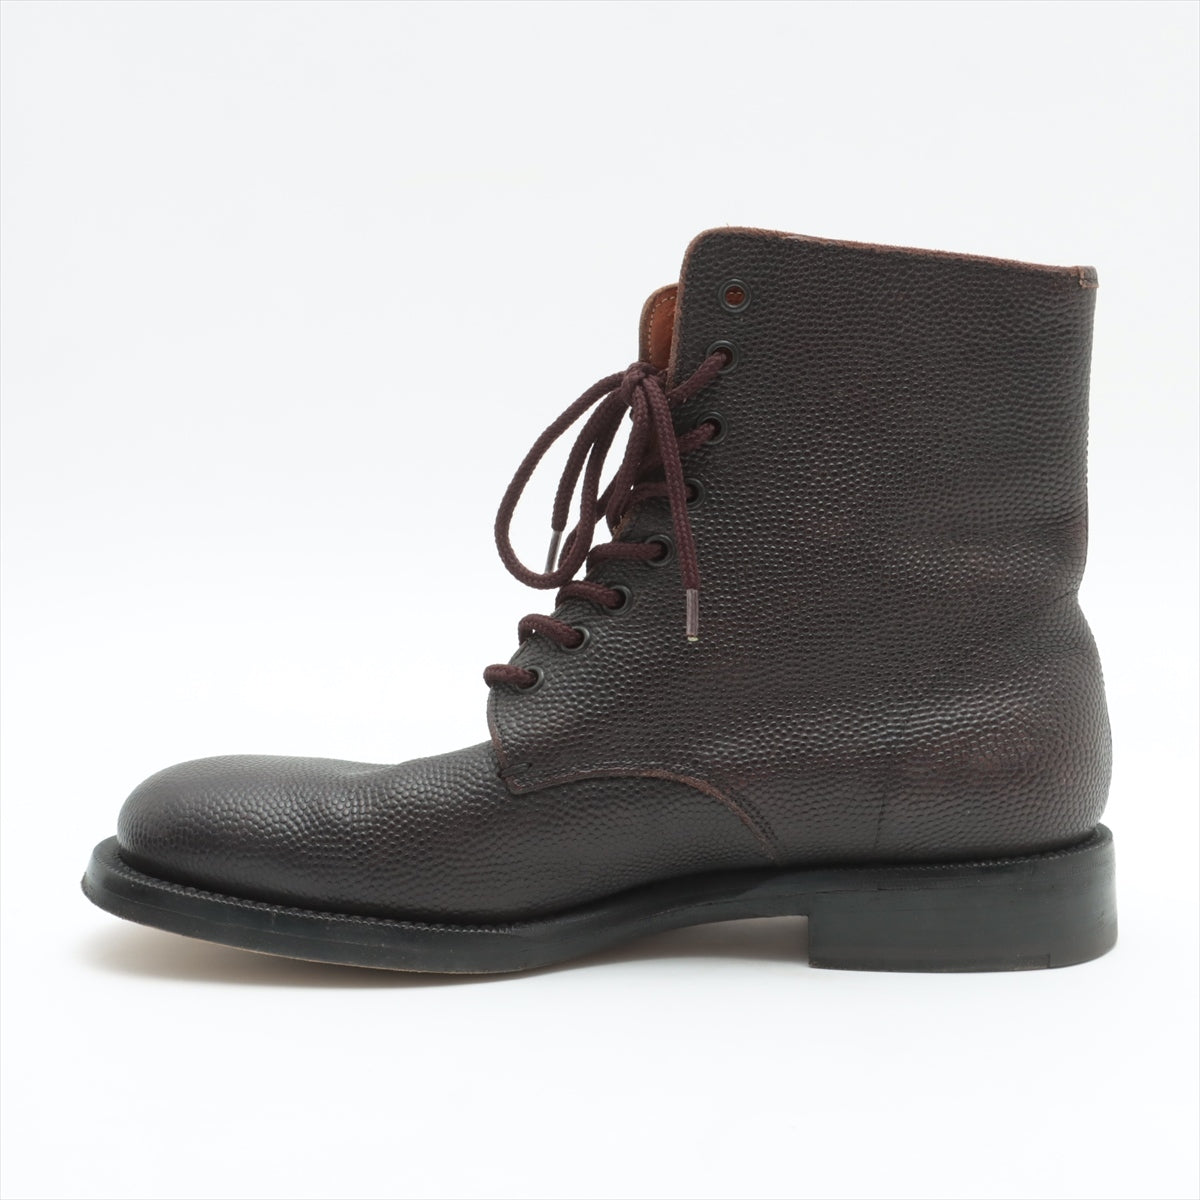 Gilsander Leather Boots 9 1/2 Men Black